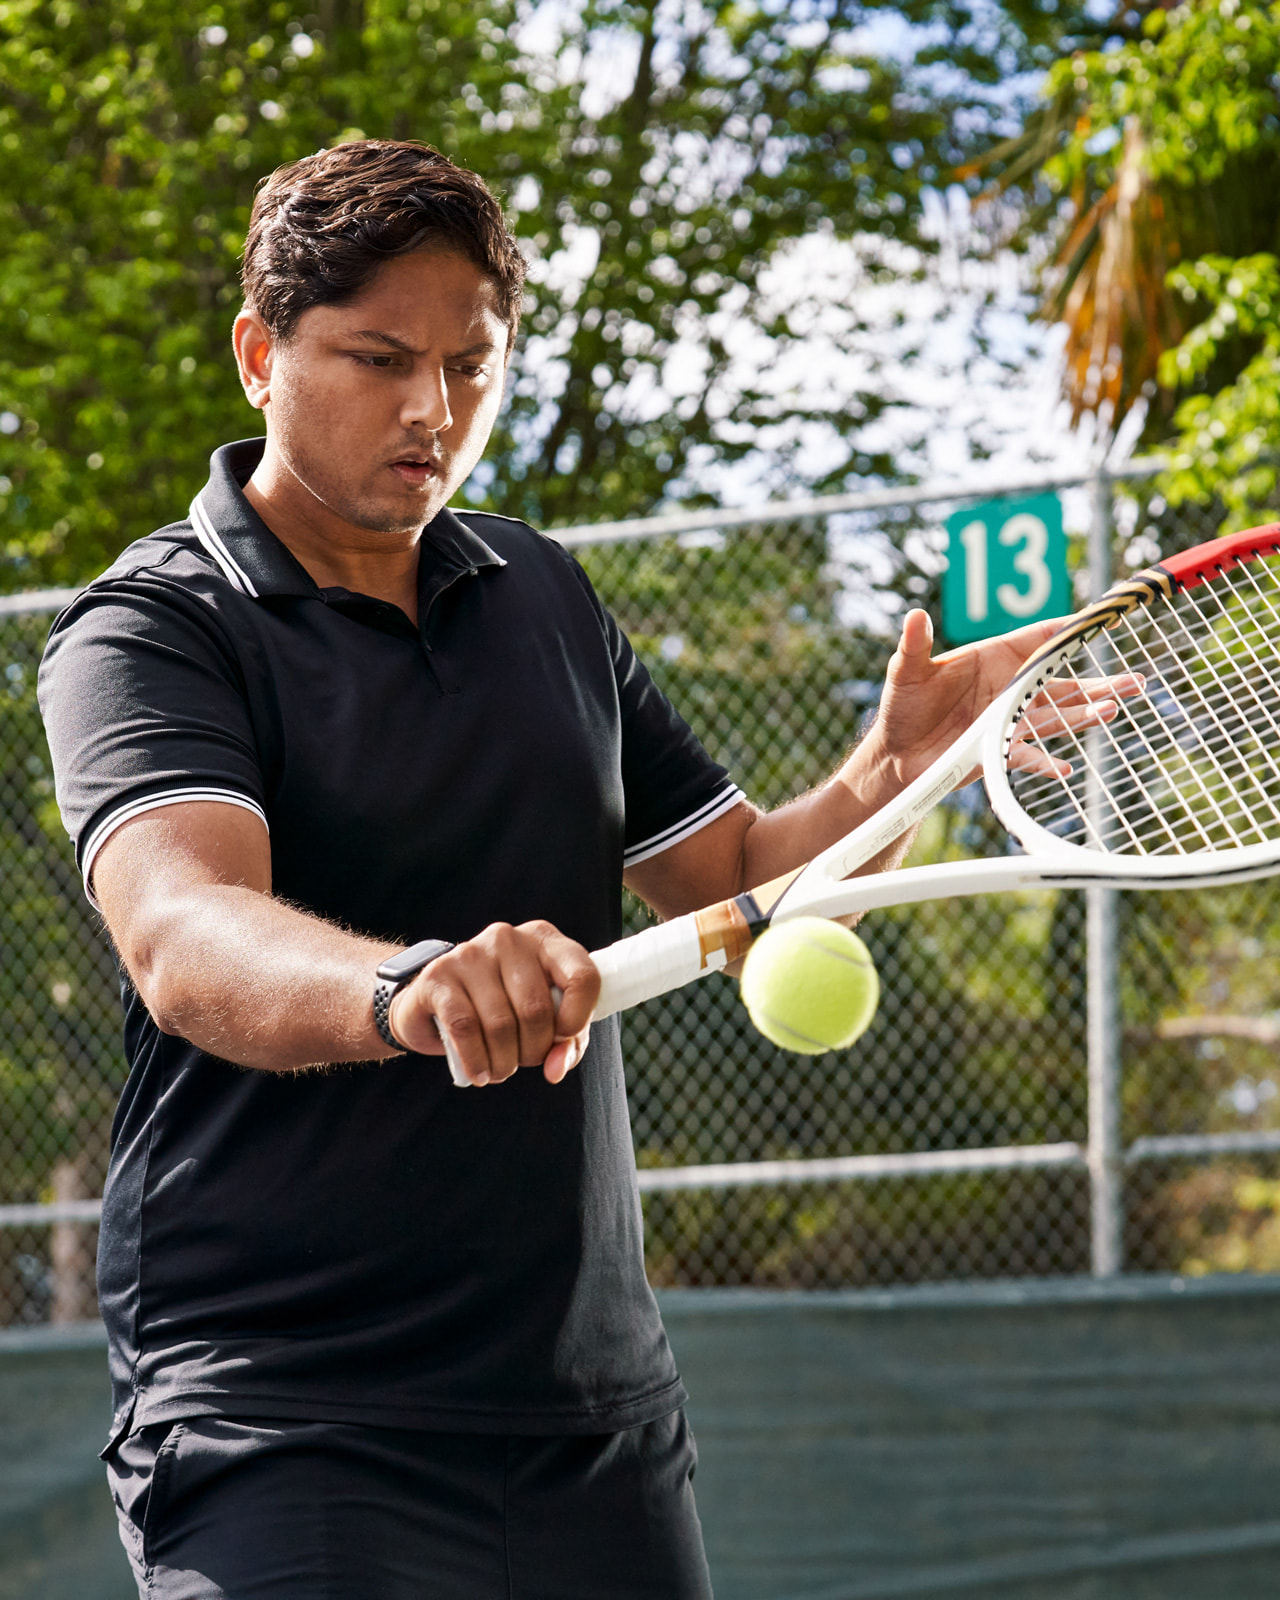 Sahai sfotografowany na kocie tenisowym, gdy uderza w piłkę z bekhendu.